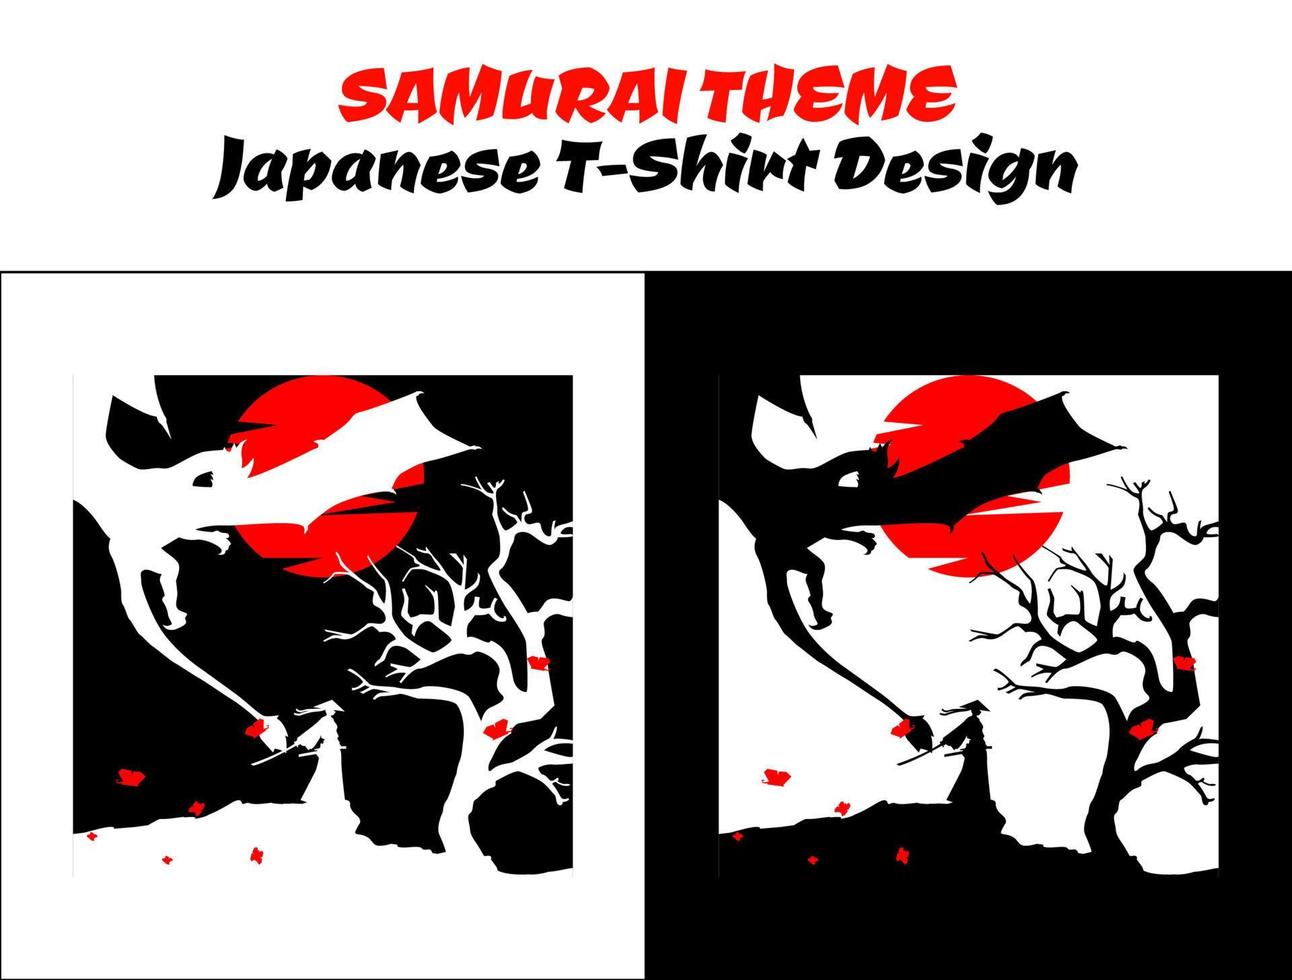 Samurai mit Drachen. Silhouette Japan Samurai Vektor zum Design T-Shirt Konzept. Samurai mit rot Mond. Samurai Vektor Illustration. Strassenmode Thema T-Shirt.